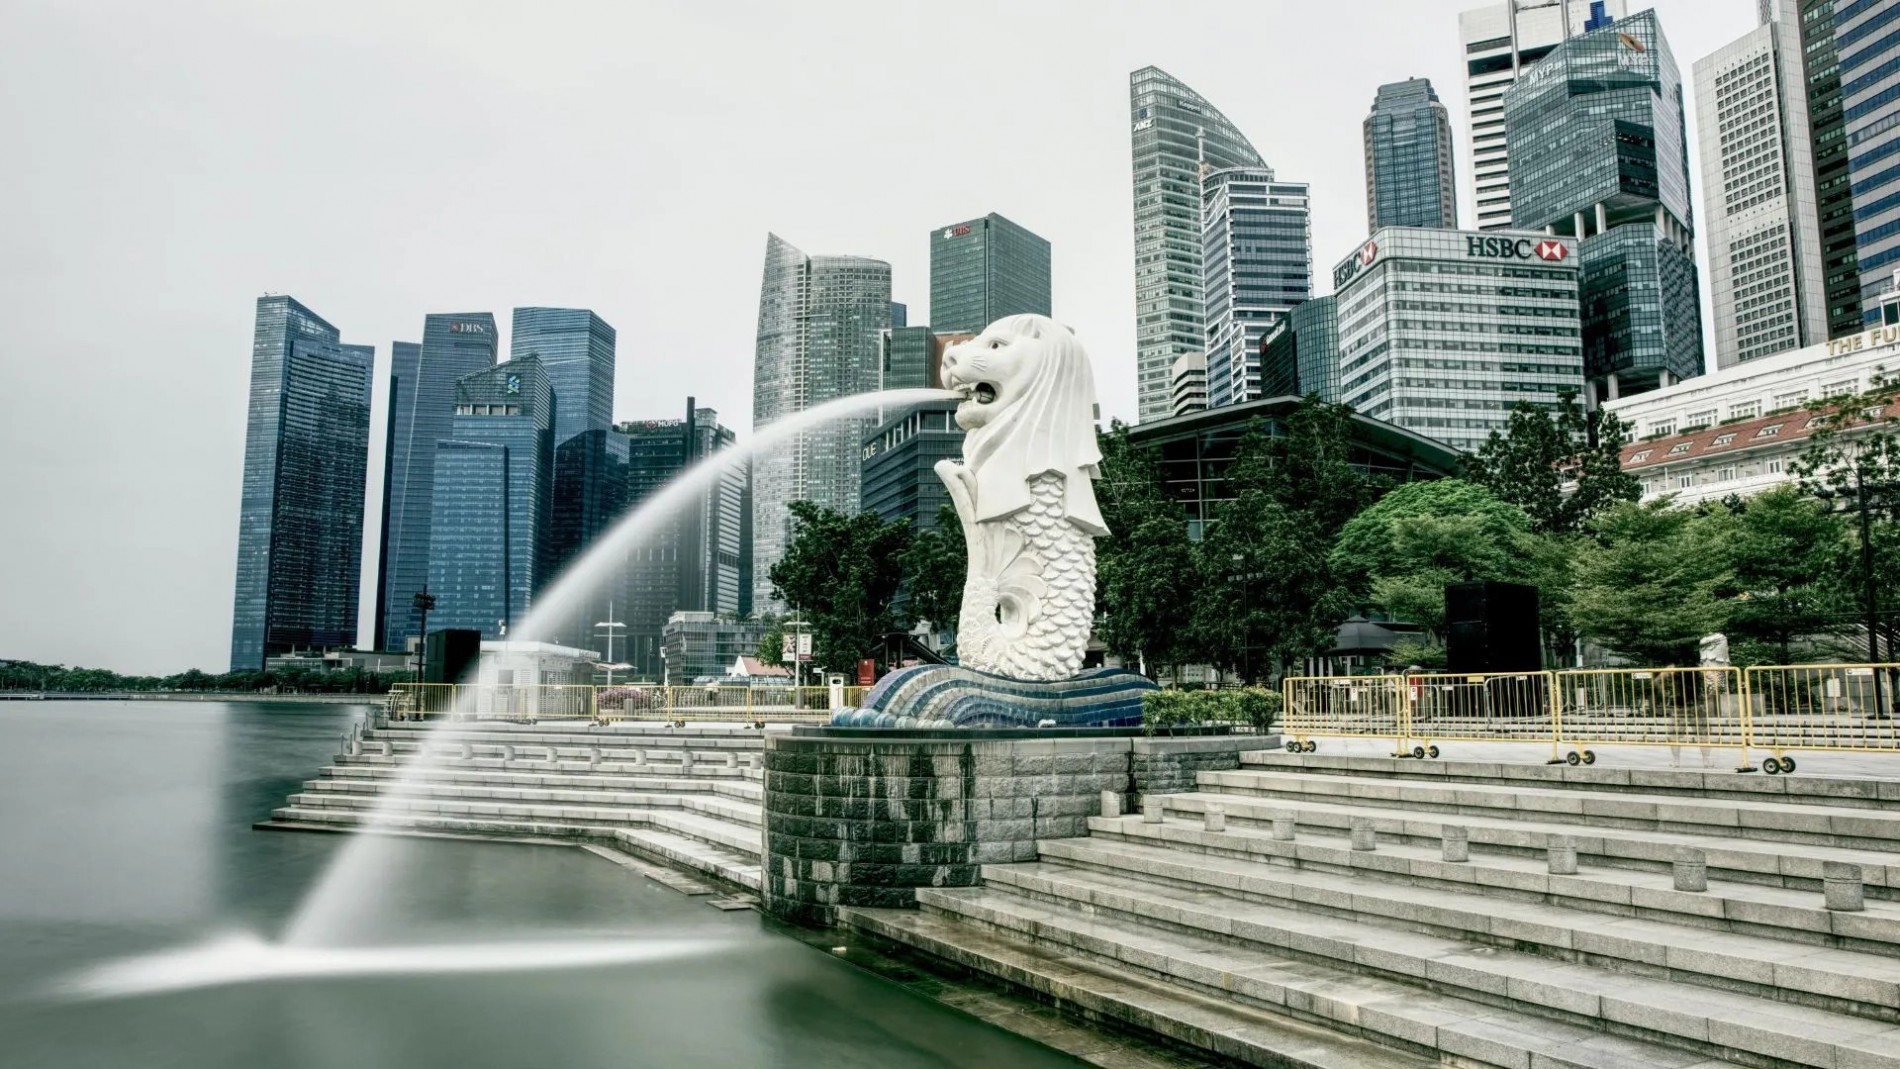 Tìm hiểu về bức tượng biểu tượng của Singapore - Merlion